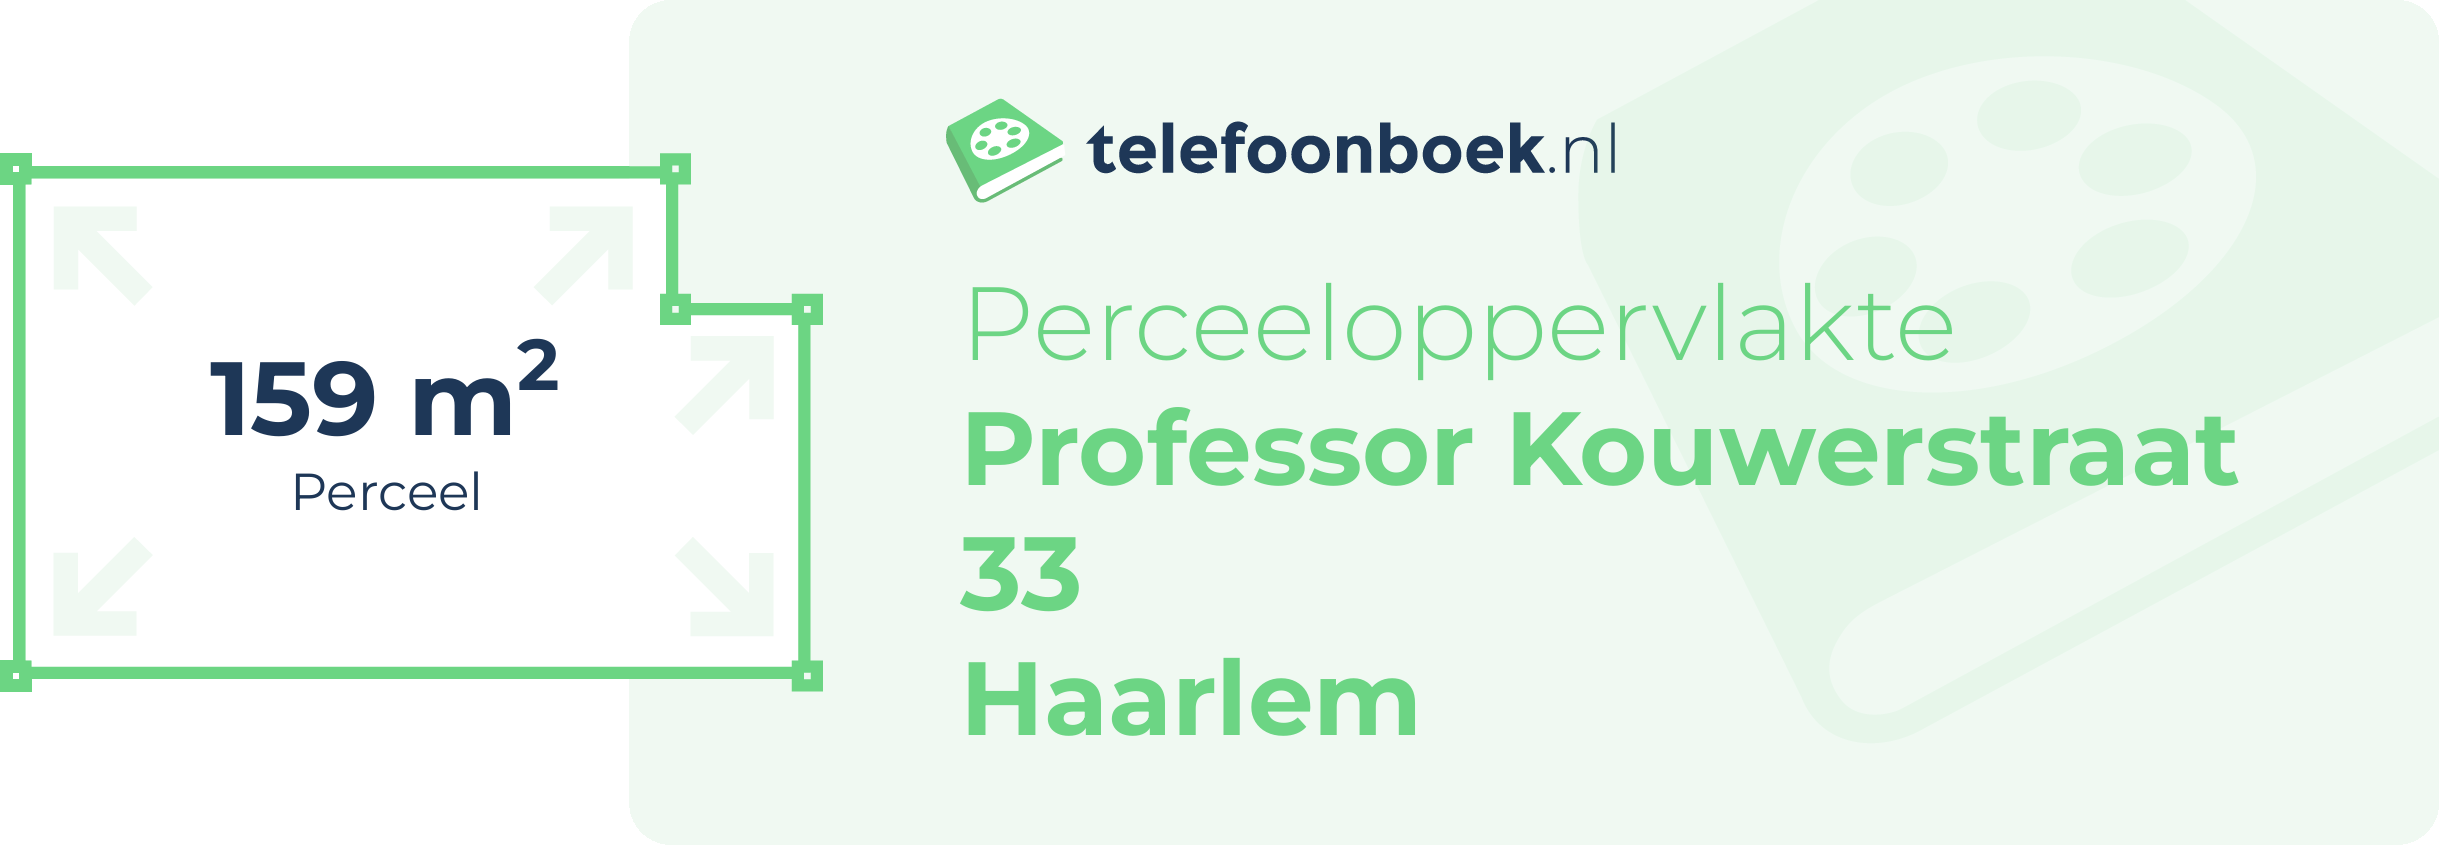 Perceeloppervlakte Professor Kouwerstraat 33 Haarlem